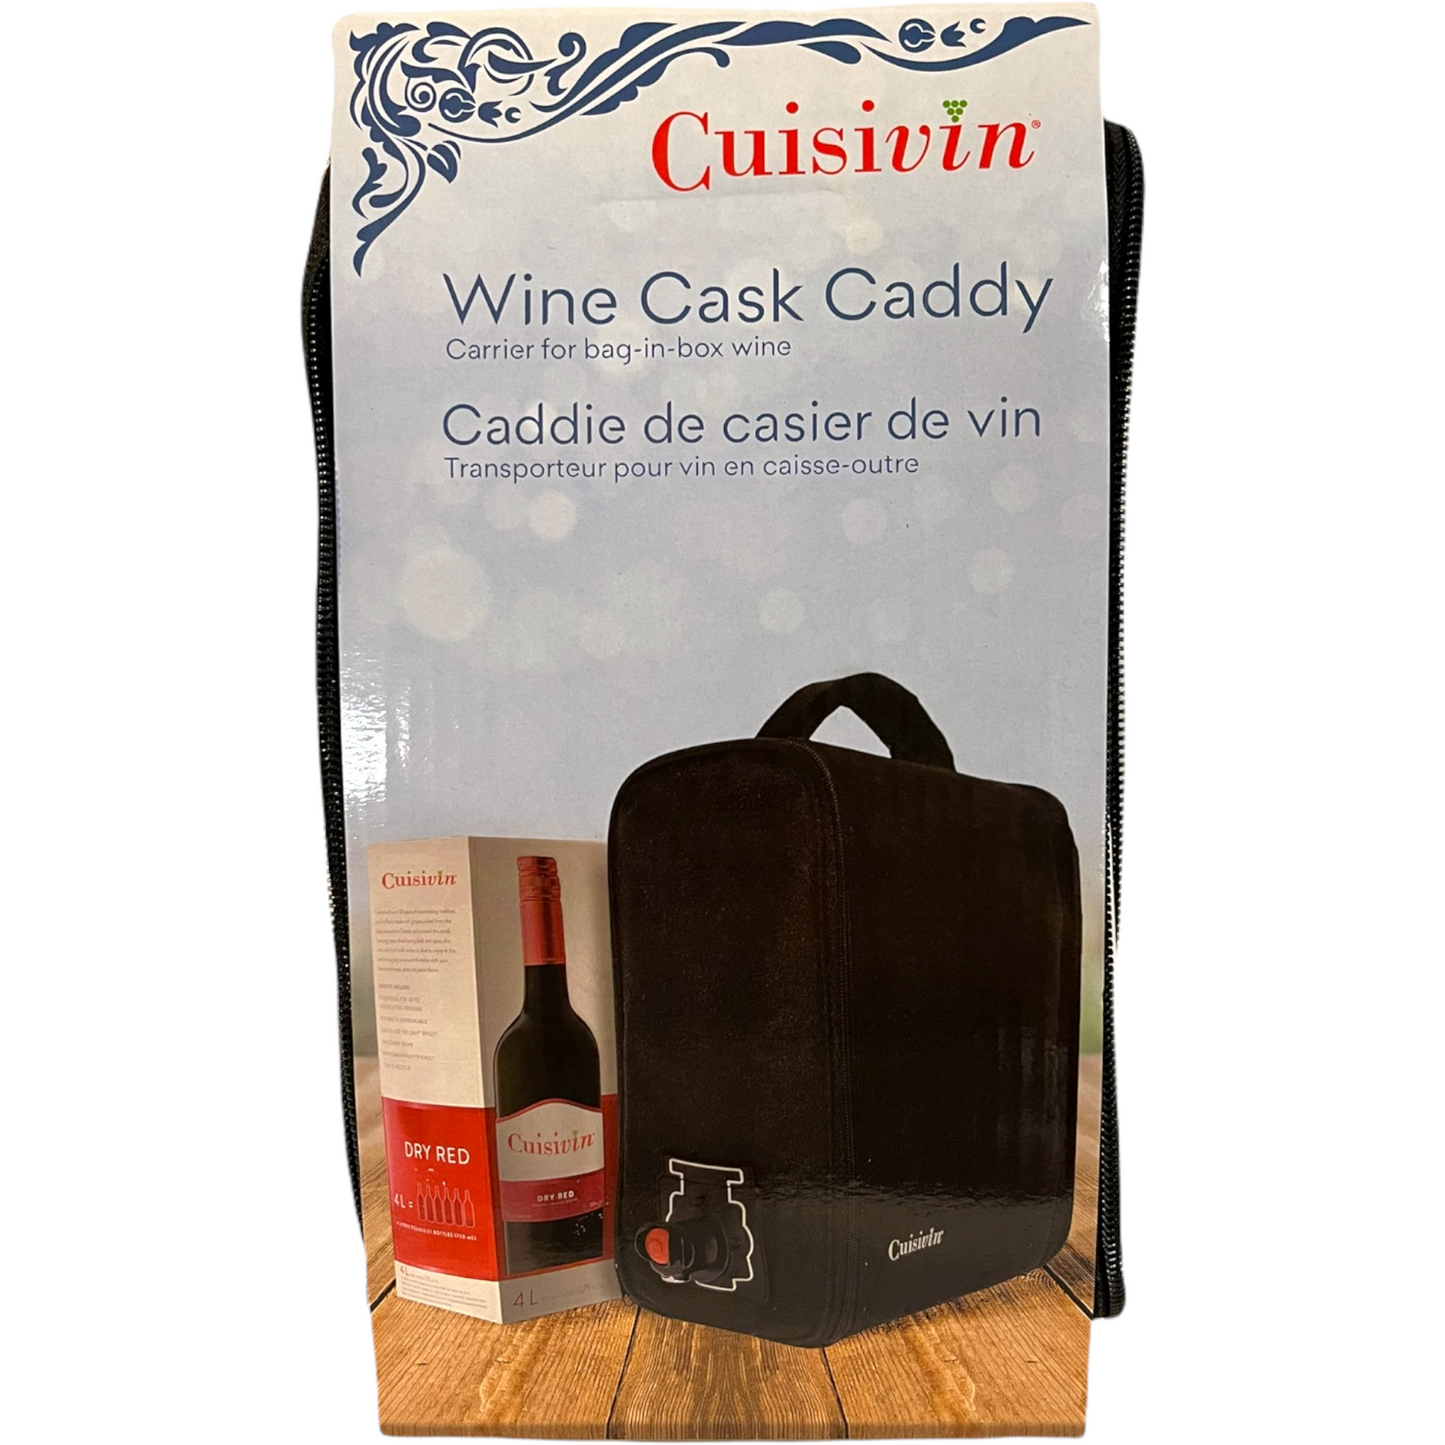 CUISIVIN WINE CASK CADDY